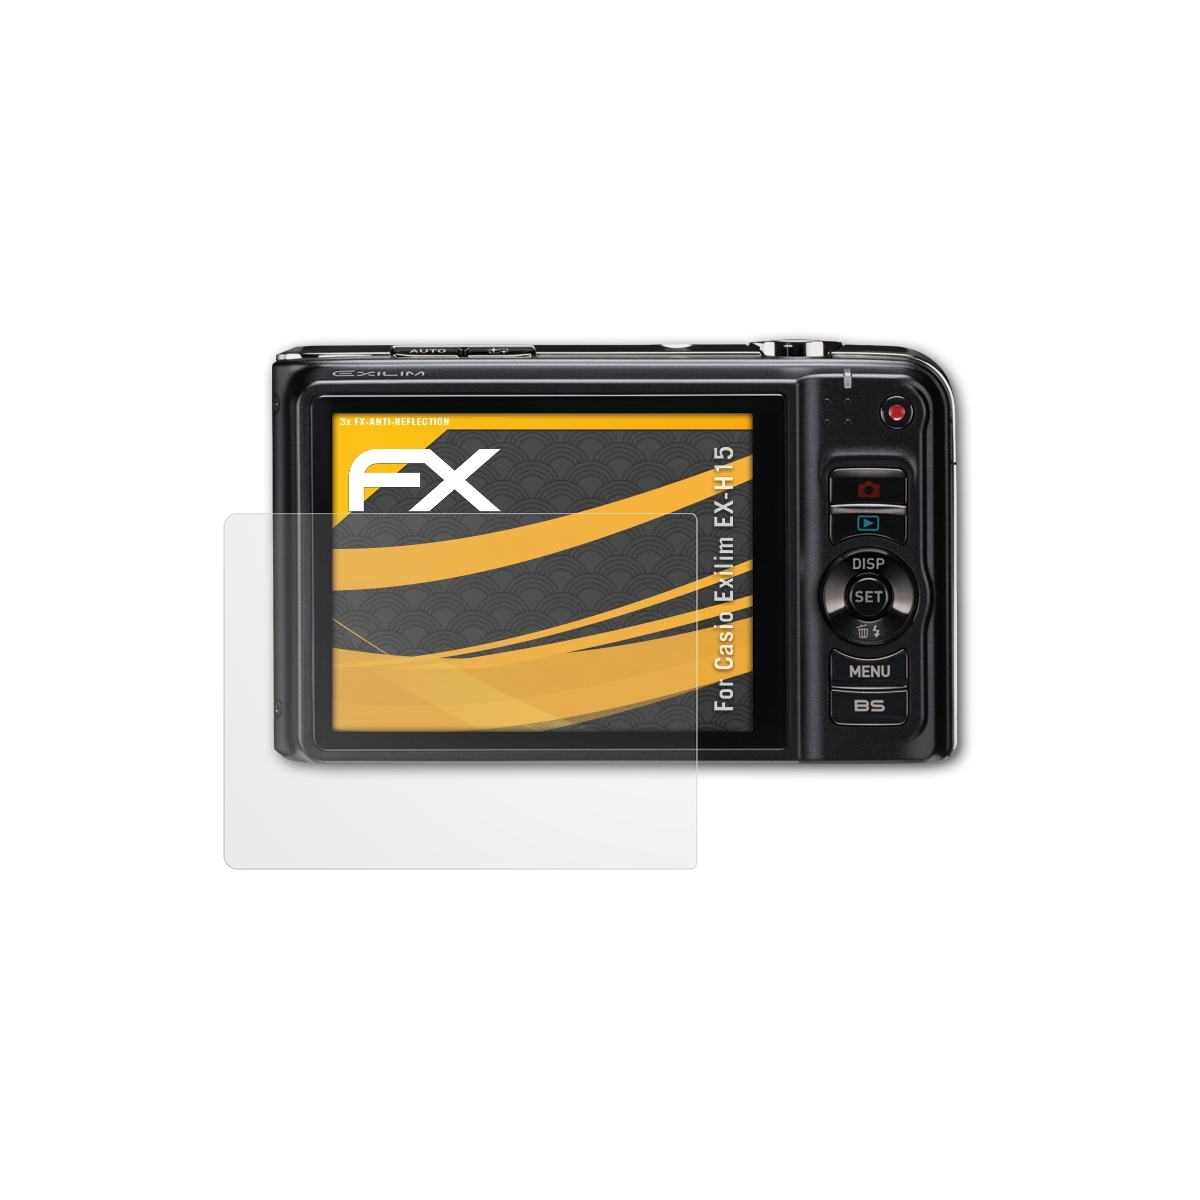 Casio 3x Displayschutz(für ATFOLIX EX-H15) Exilim FX-Antireflex